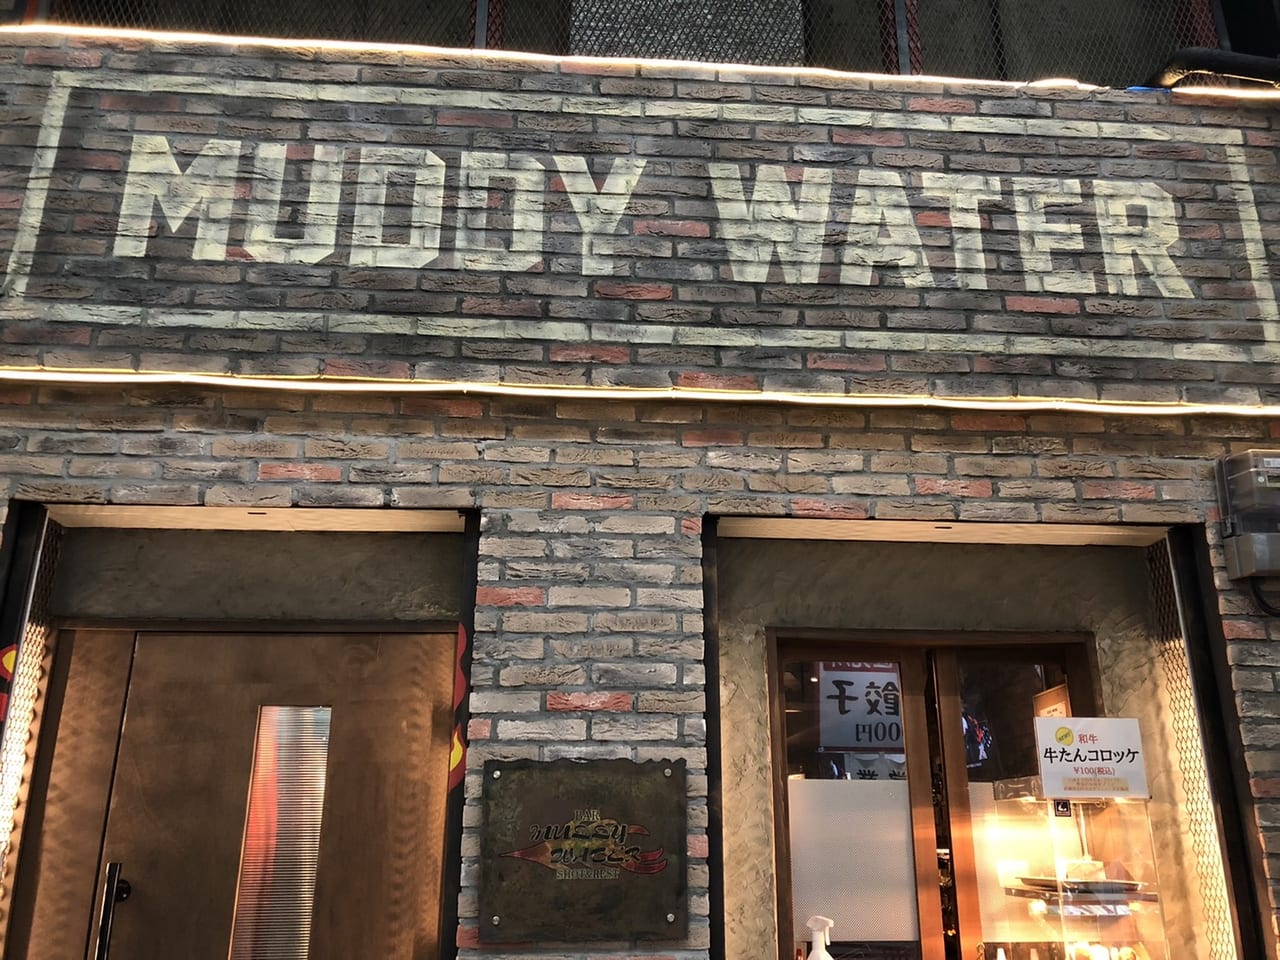 muddywater